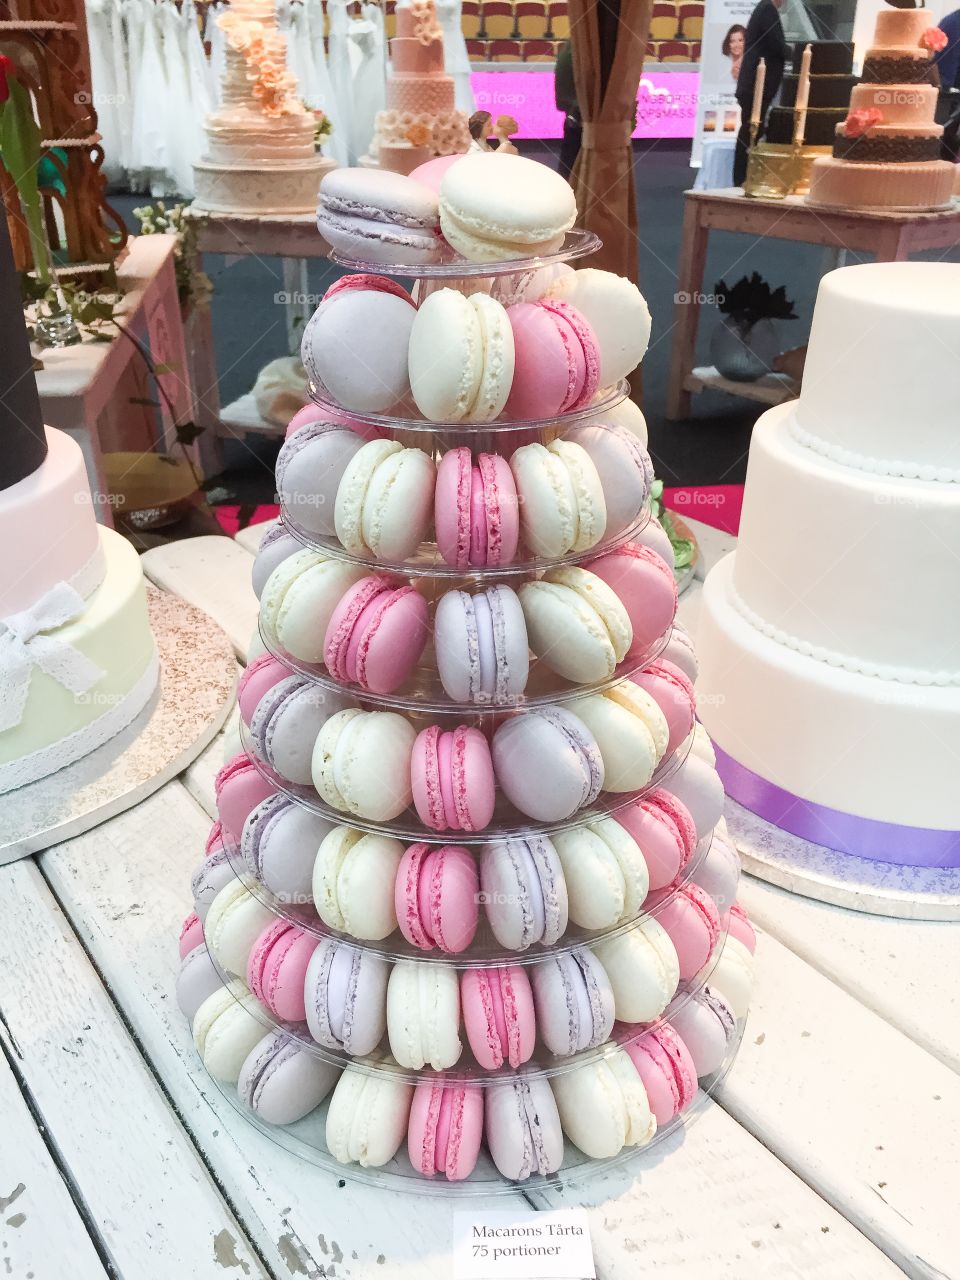 Macarons on a wedding fair.